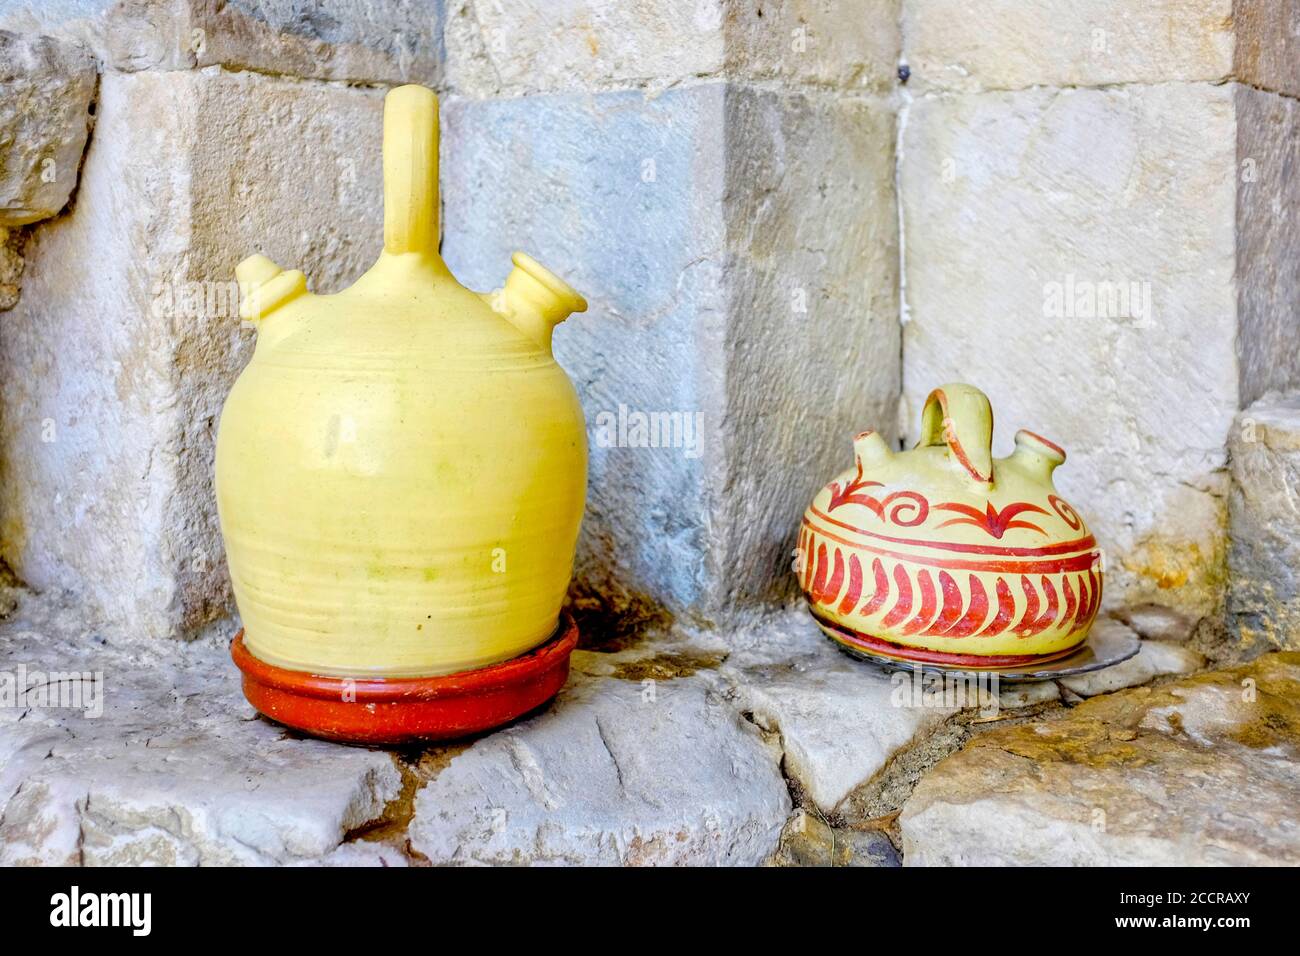 Botijo, ein traditioneller poröser spanischer Tonbehälter, der für die Wasseraufsaugen entwickelt wurde. Stockfoto